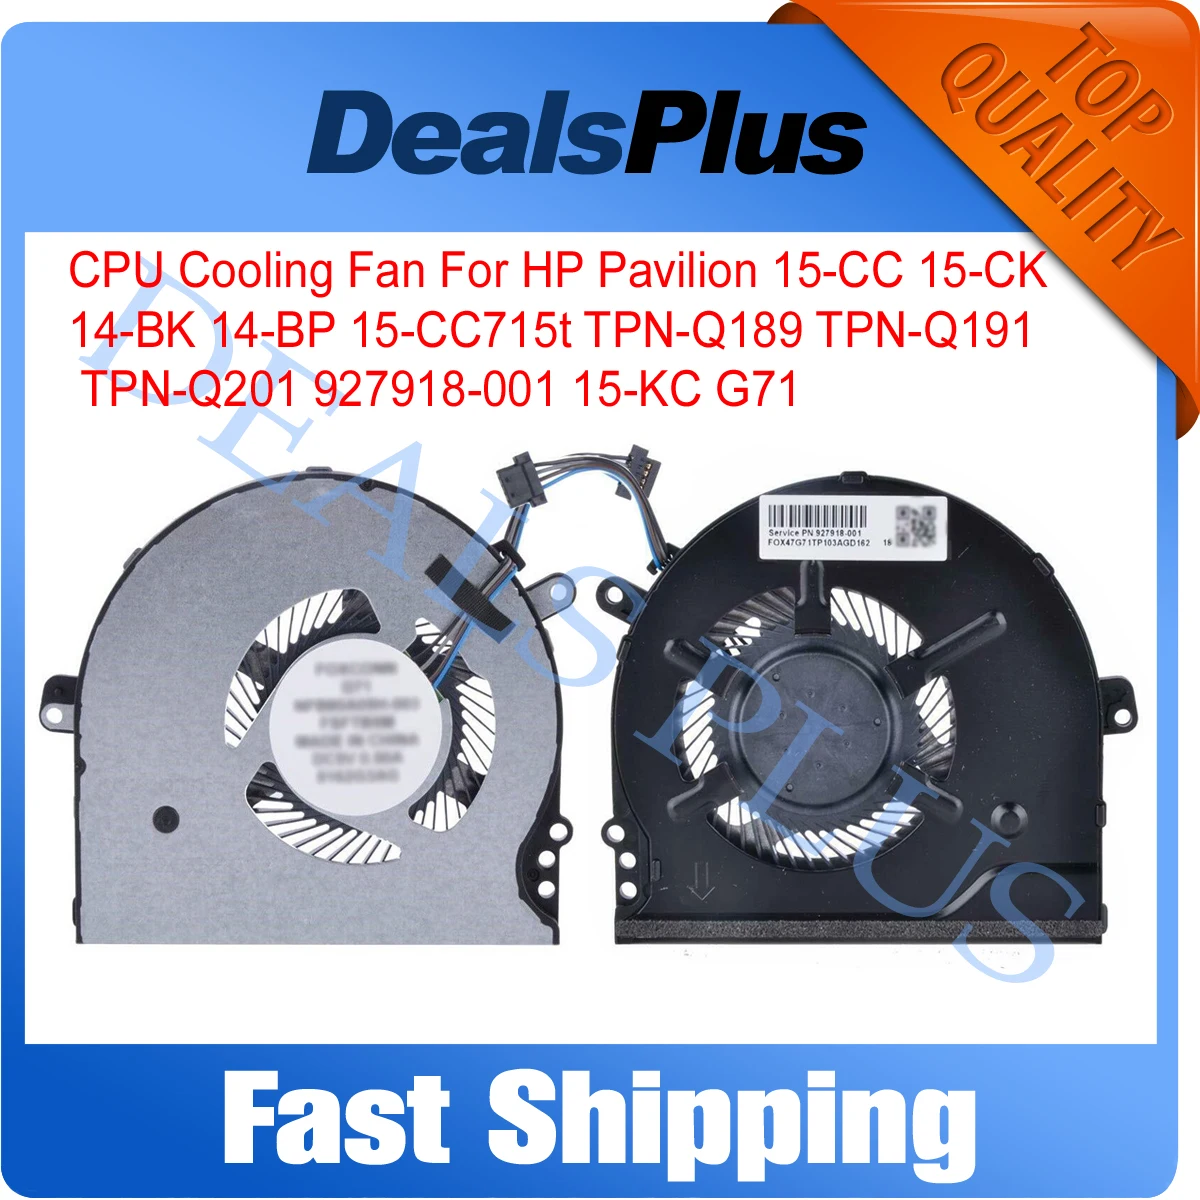 

New CPU Cooler Cooling Fan For HP Pavilion 15-CC 15-CK 14-BK 14-BP 15-CC715t TPN-Q189 TPN-Q191 TPN-Q201 927918-001 15-KC G71